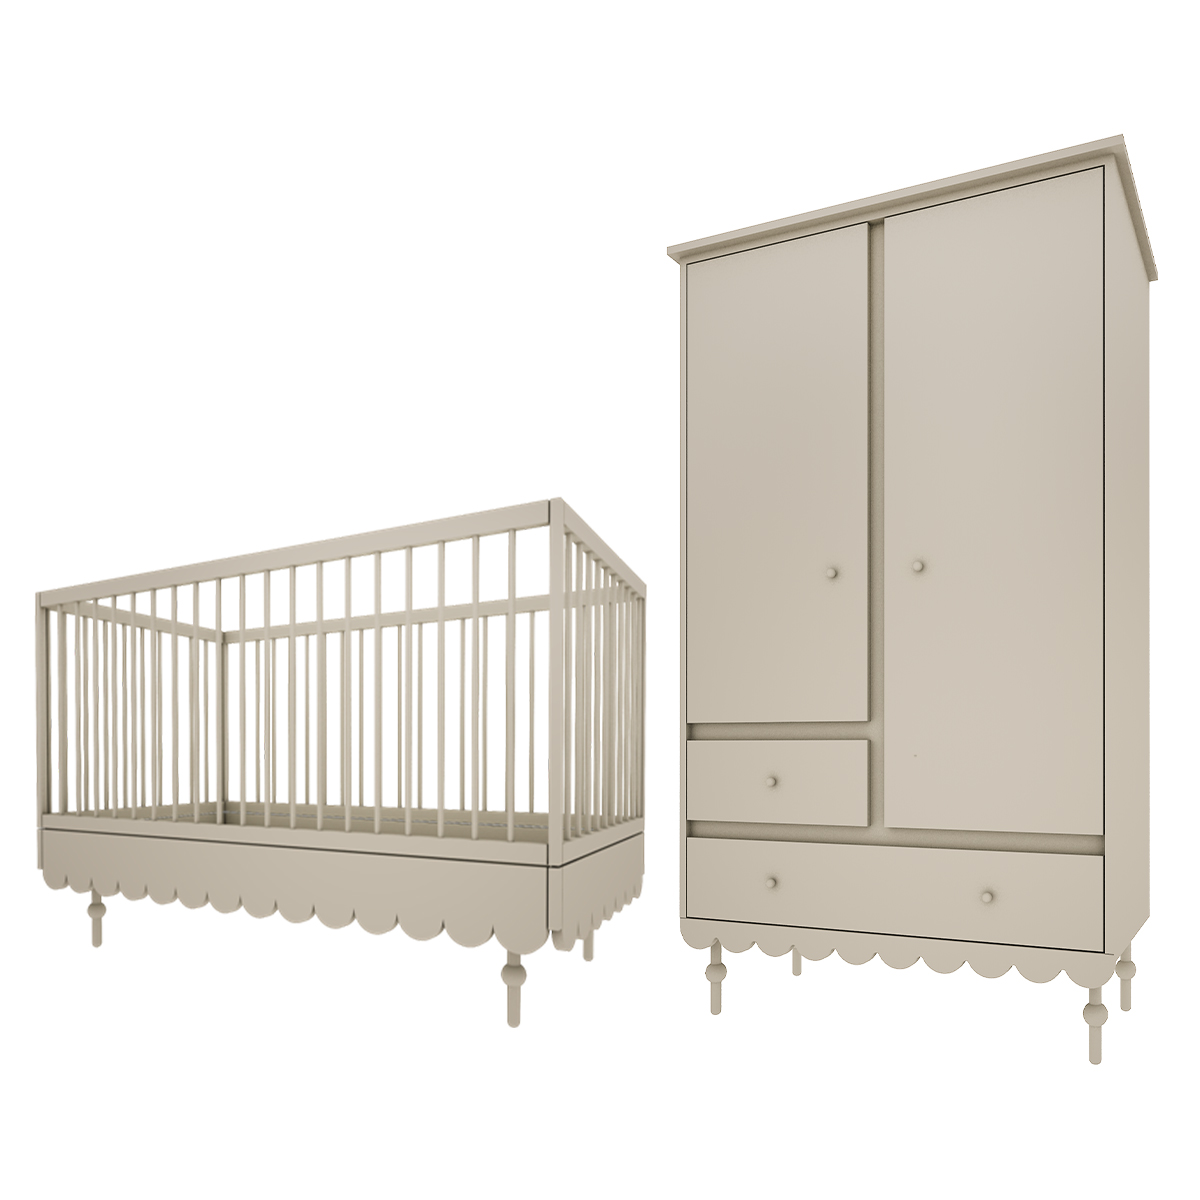 Chambre bébé : Duo - Lit évolutif 70x140 armoire 2 portes olive